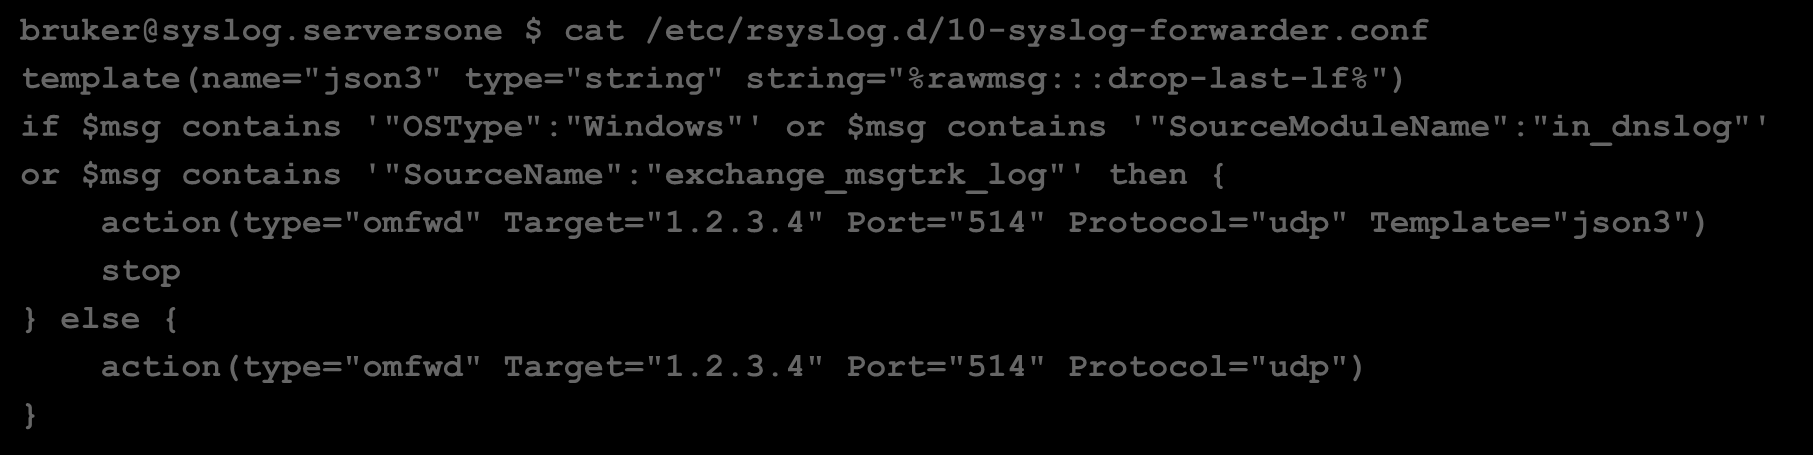 KONFIGURASJON LOGGKJEDE SENTRALISERT LOGGING Forwarder (Linux rsyslogd) bruker@syslog.serversone $ cat /etc/rsyslog.conf.. $ModLoad imtcp $UDPServerRun 514.. bruker@syslog.serversone $ cat /etc/rsyslog.d/10-syslog-forwarder.